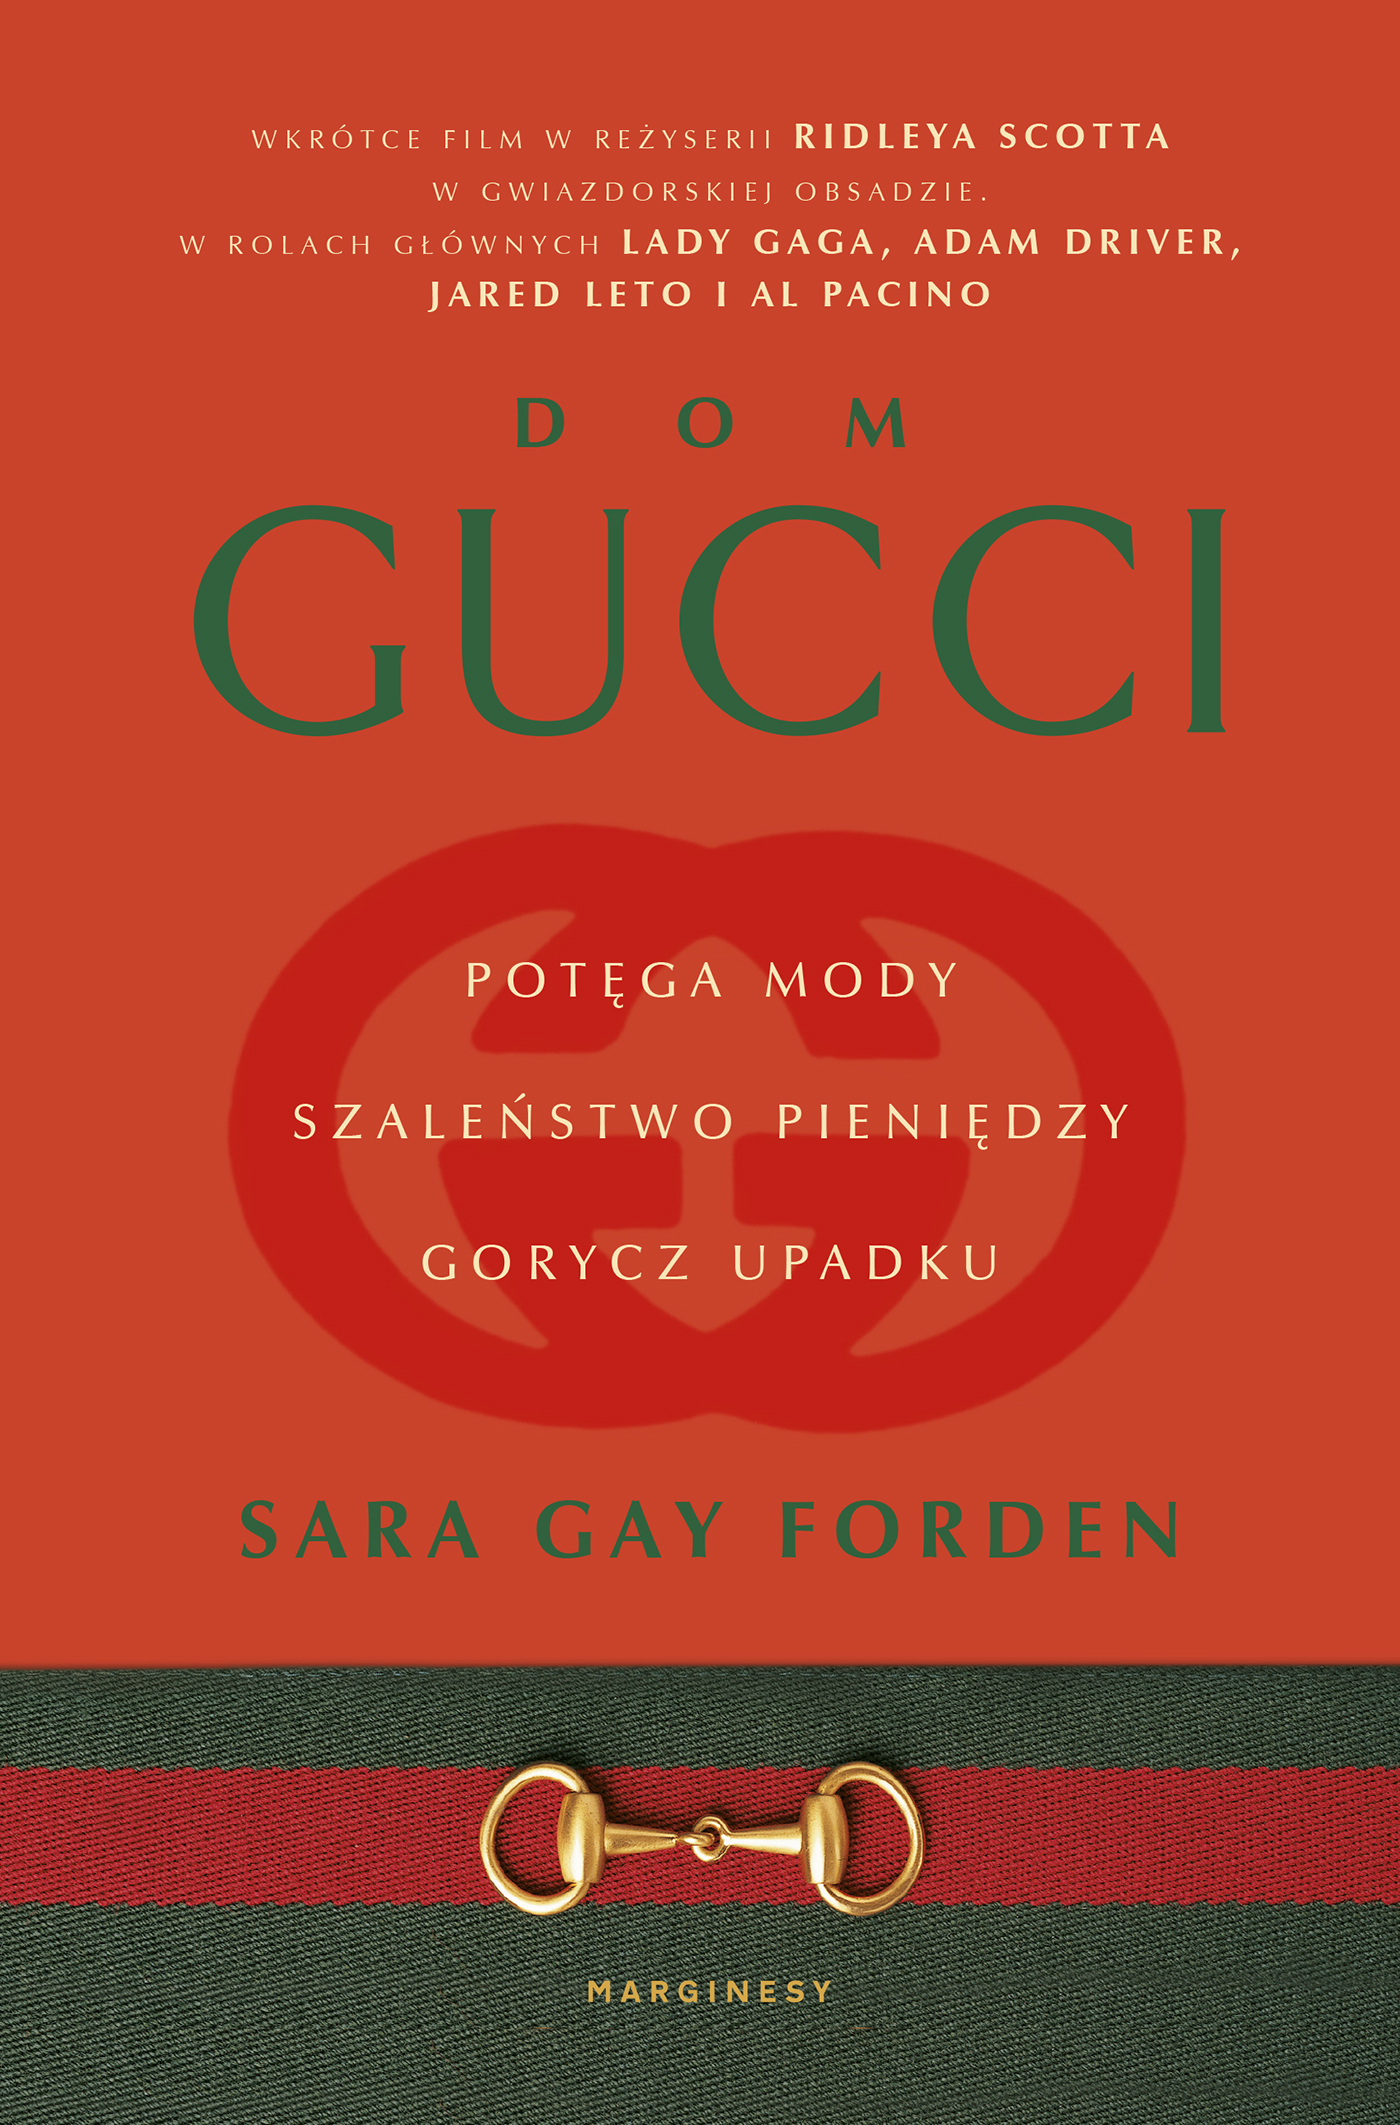 Okładka w kolorze czerownym ze znakiem firmowym Gucci - nakładające się na siebie drukowane litery G